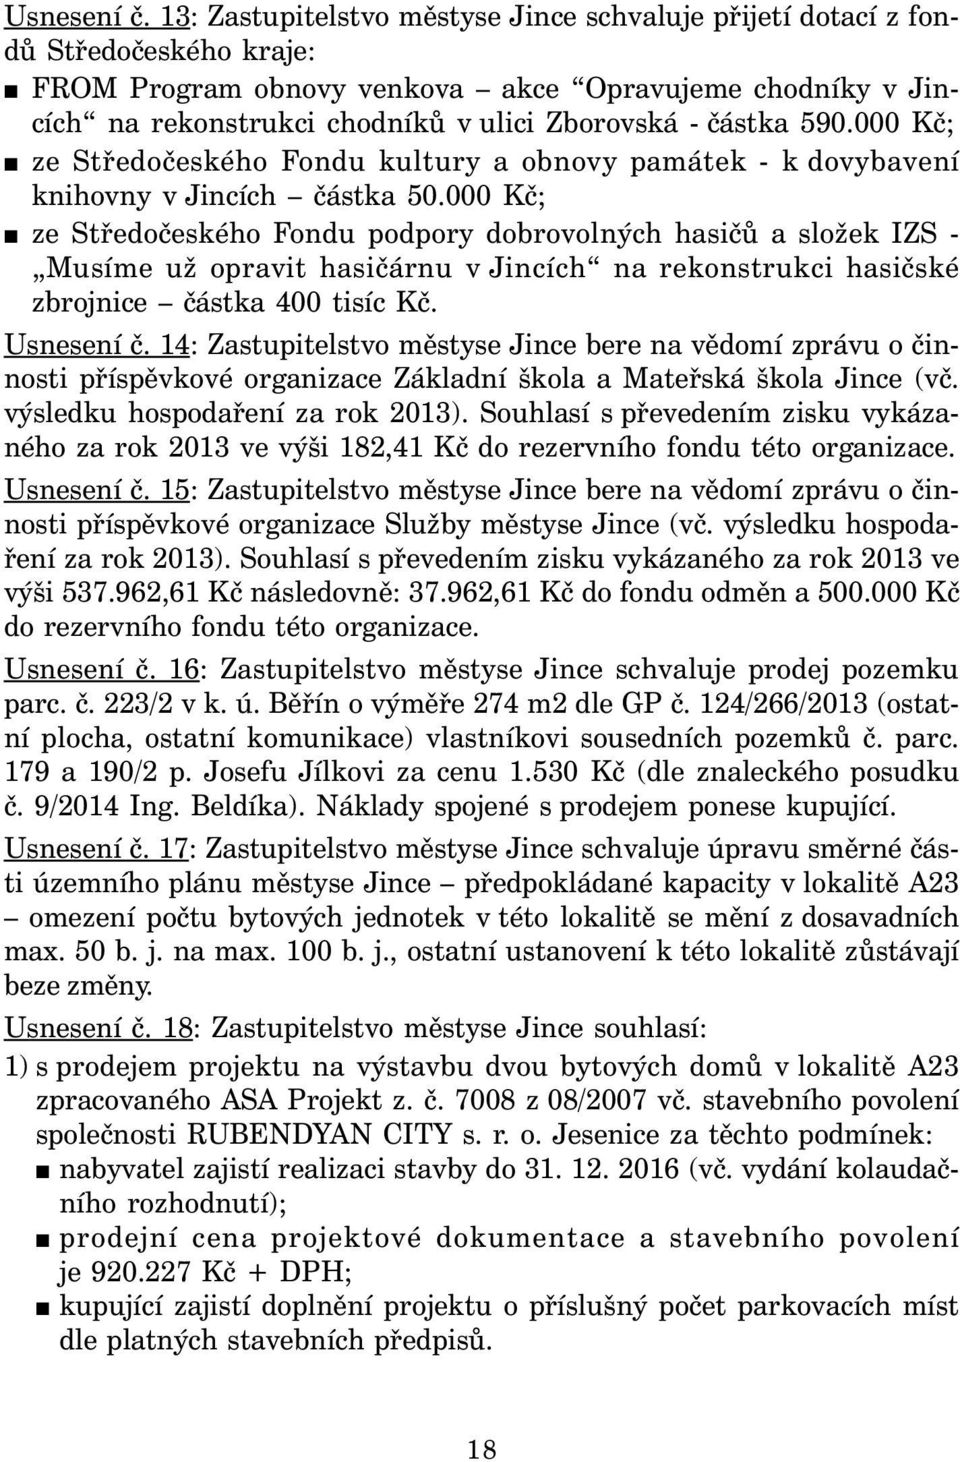 částka 590.000 Kč; ze Středočeského Fondu kultury a obnovy památek - k dovybavení knihovny v Jincích částka 50.